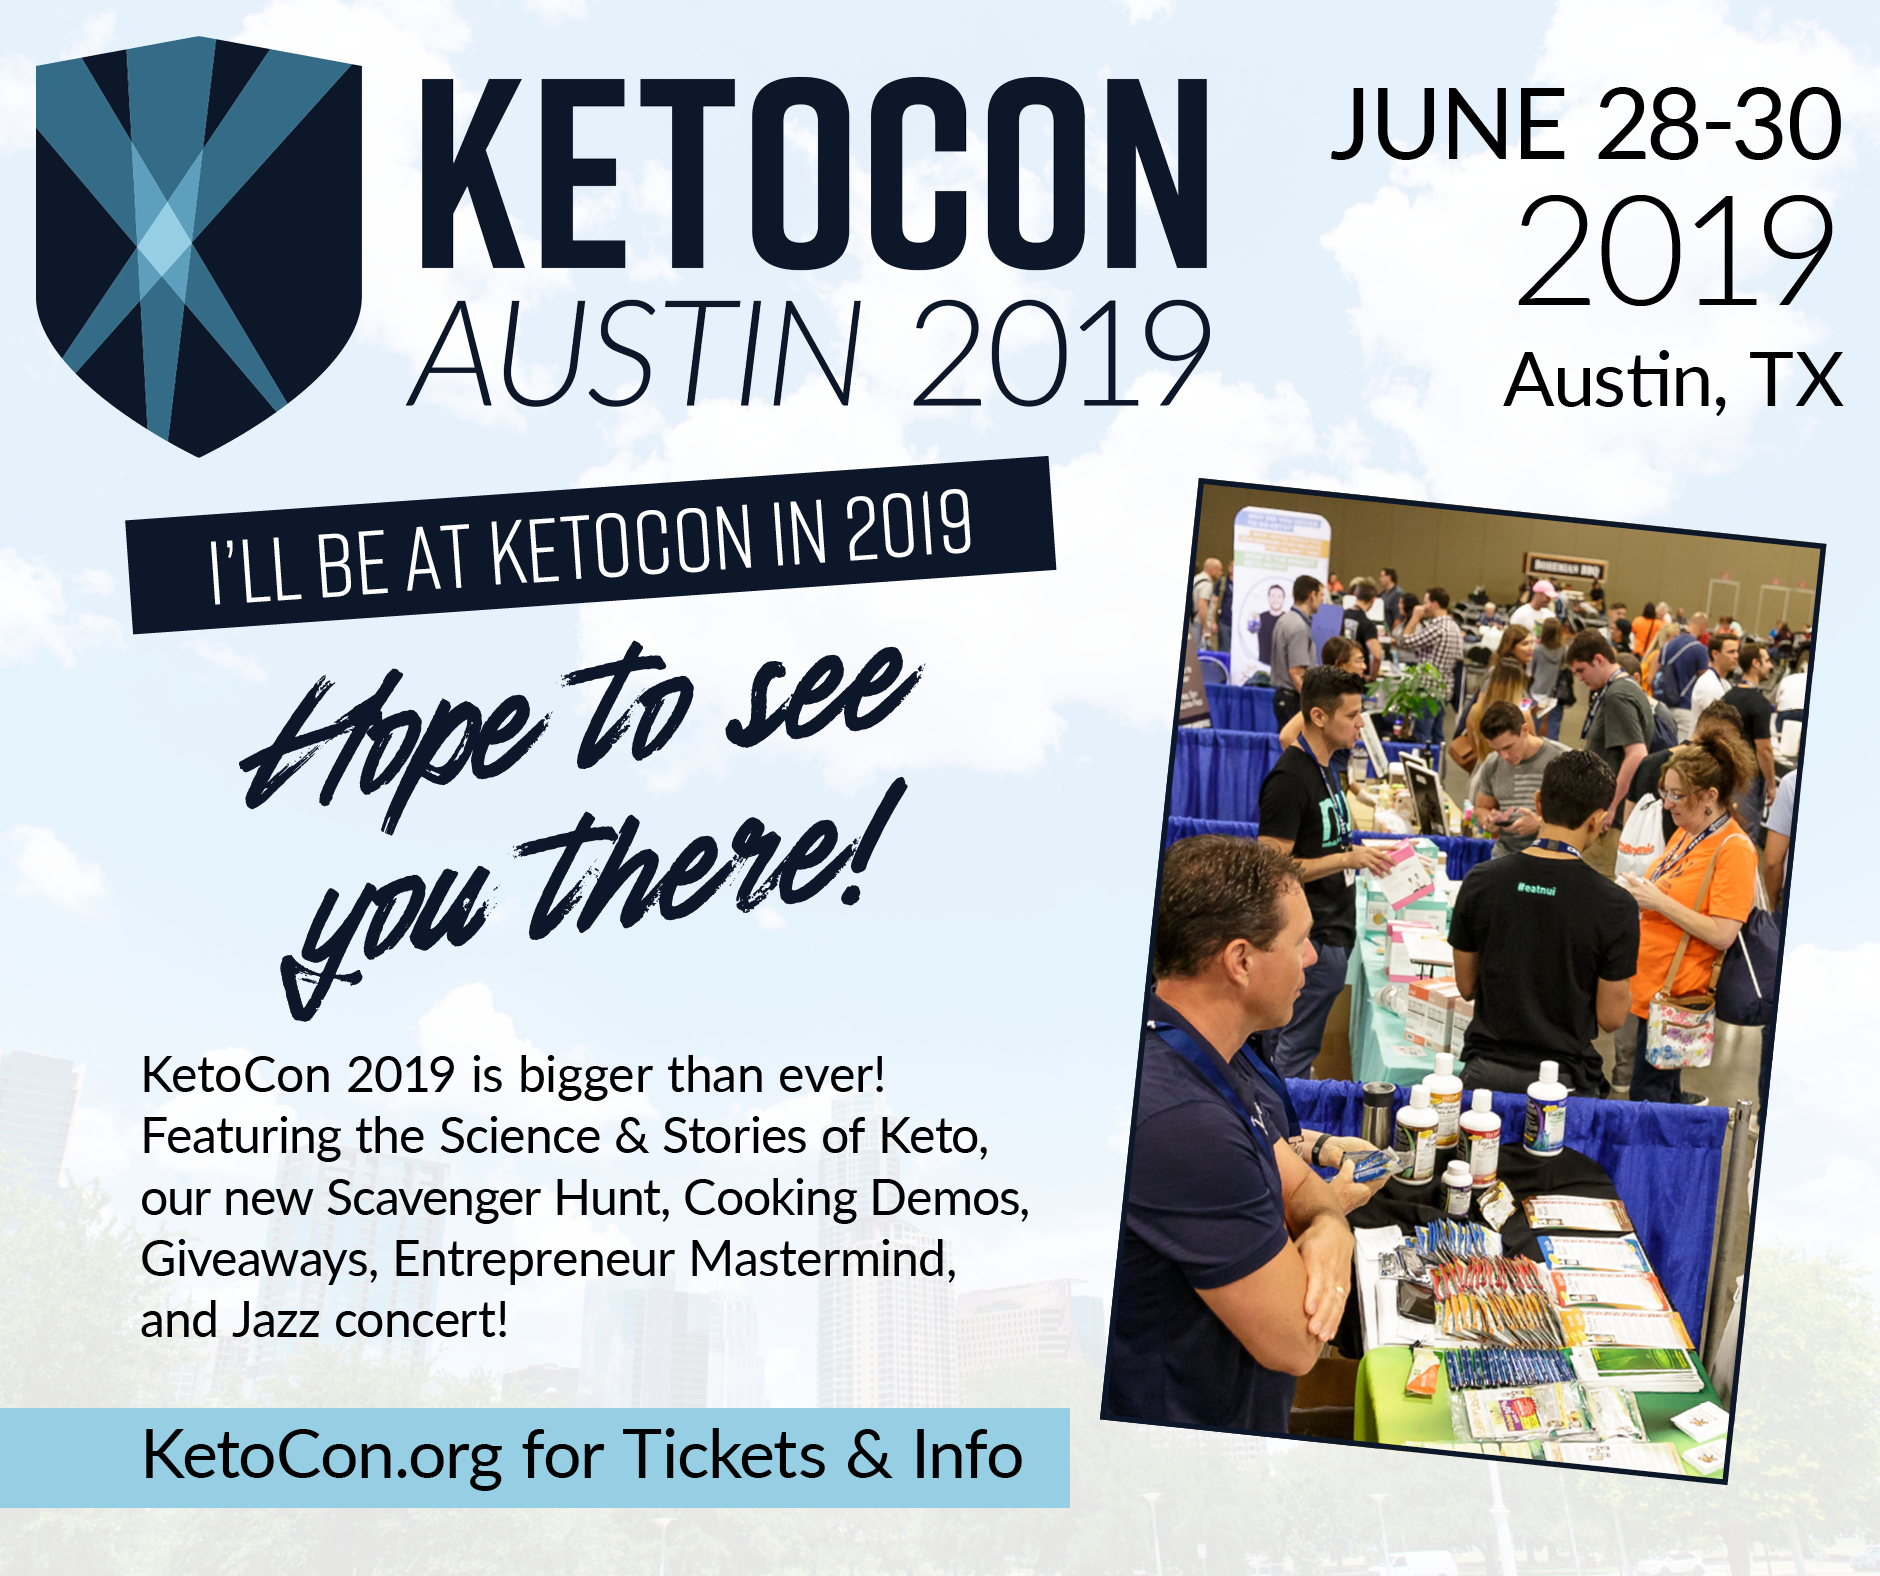 Ketocon 2019 - Keto Conference in Austin TX